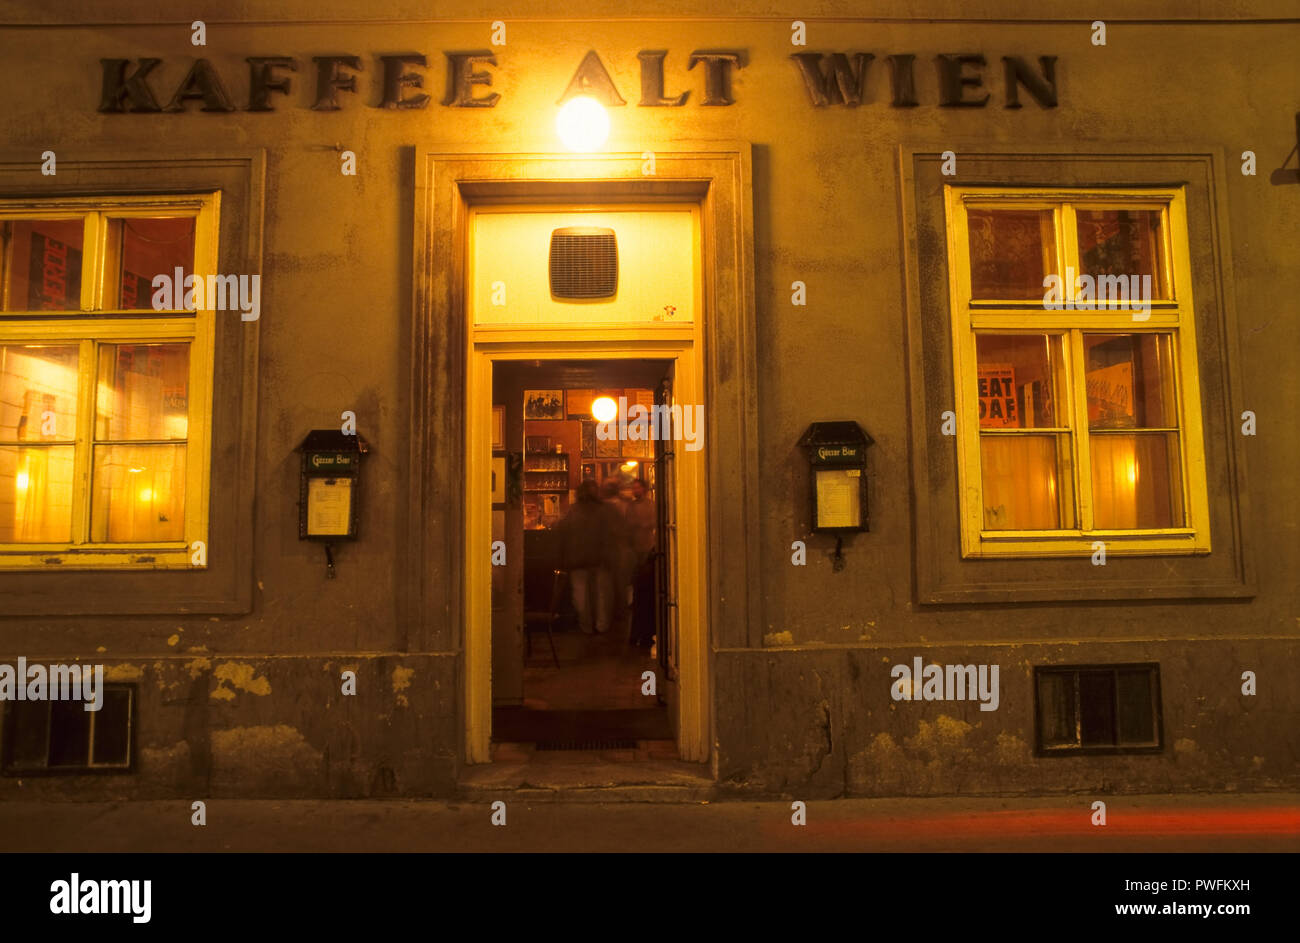 Wien, Kaffee Alt Wien Stock Photo - Alamy